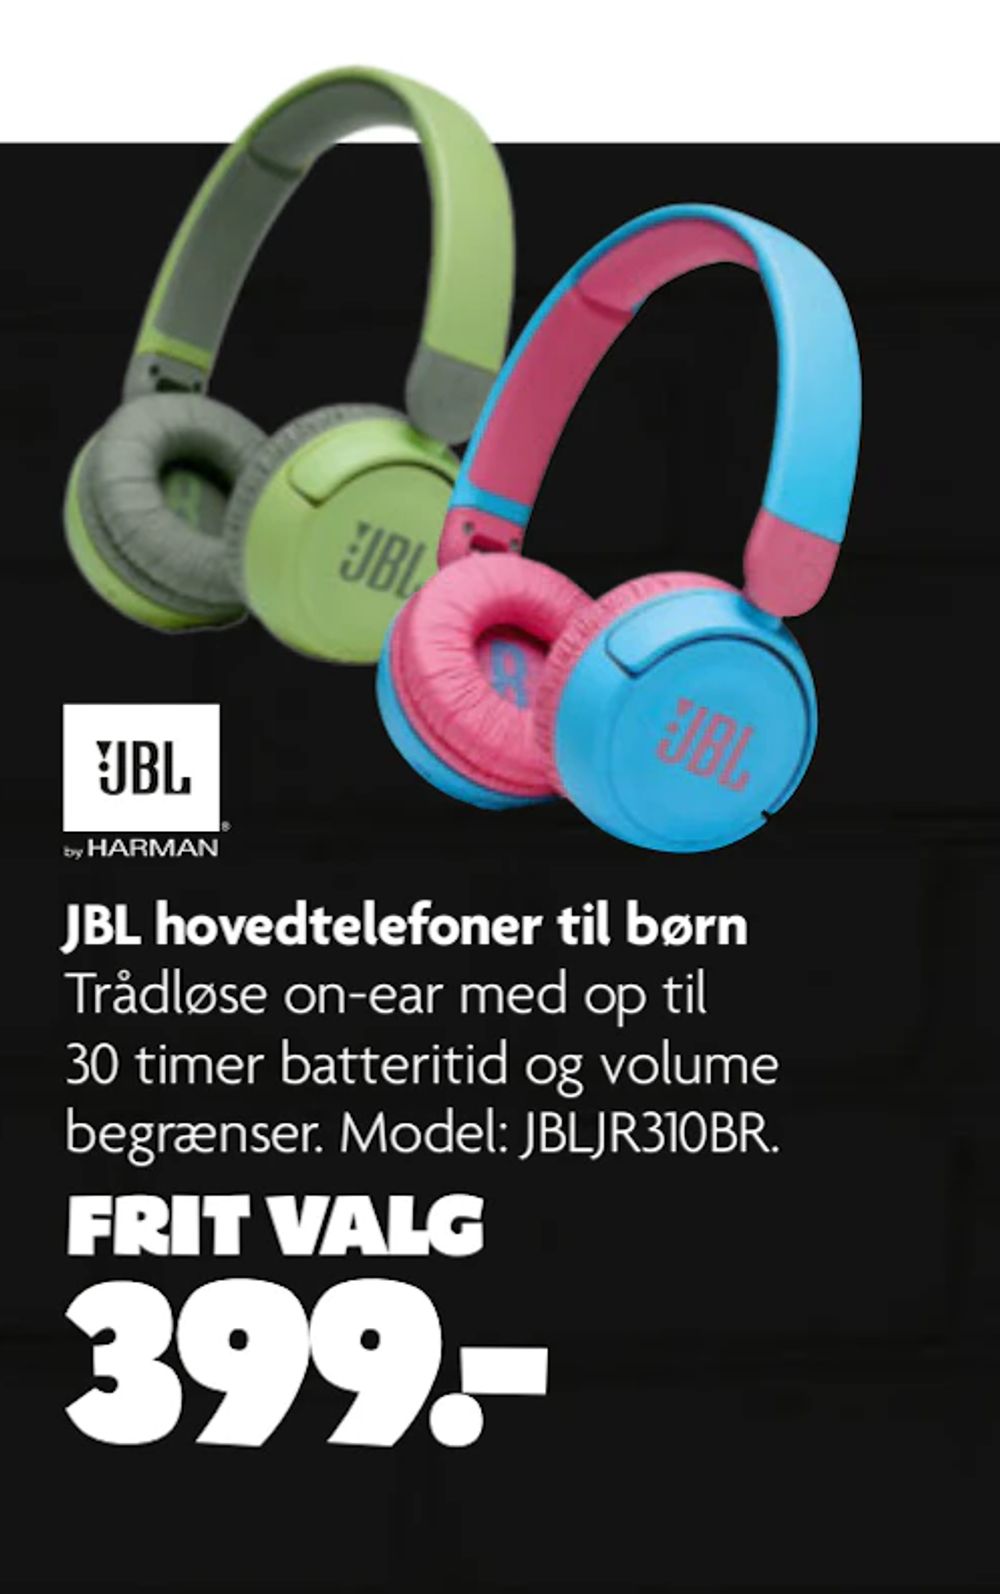 Tilbud på JBL hovedtelefoner til børn fra BR til 399 kr.